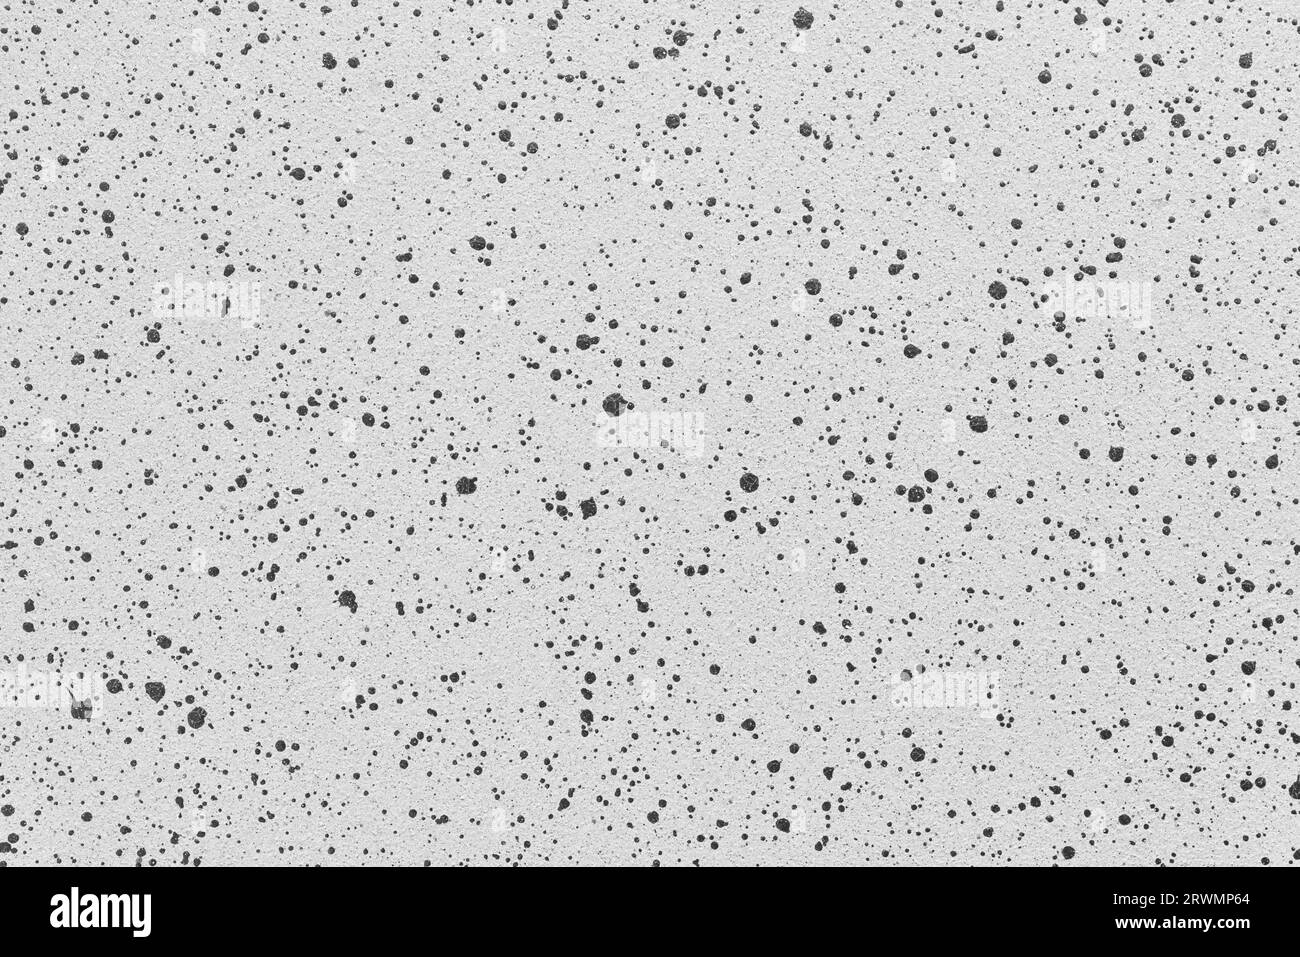 Fond ou texture de quartz gris avec des points noirs irregurants. Photographie haute résolution Banque D'Images